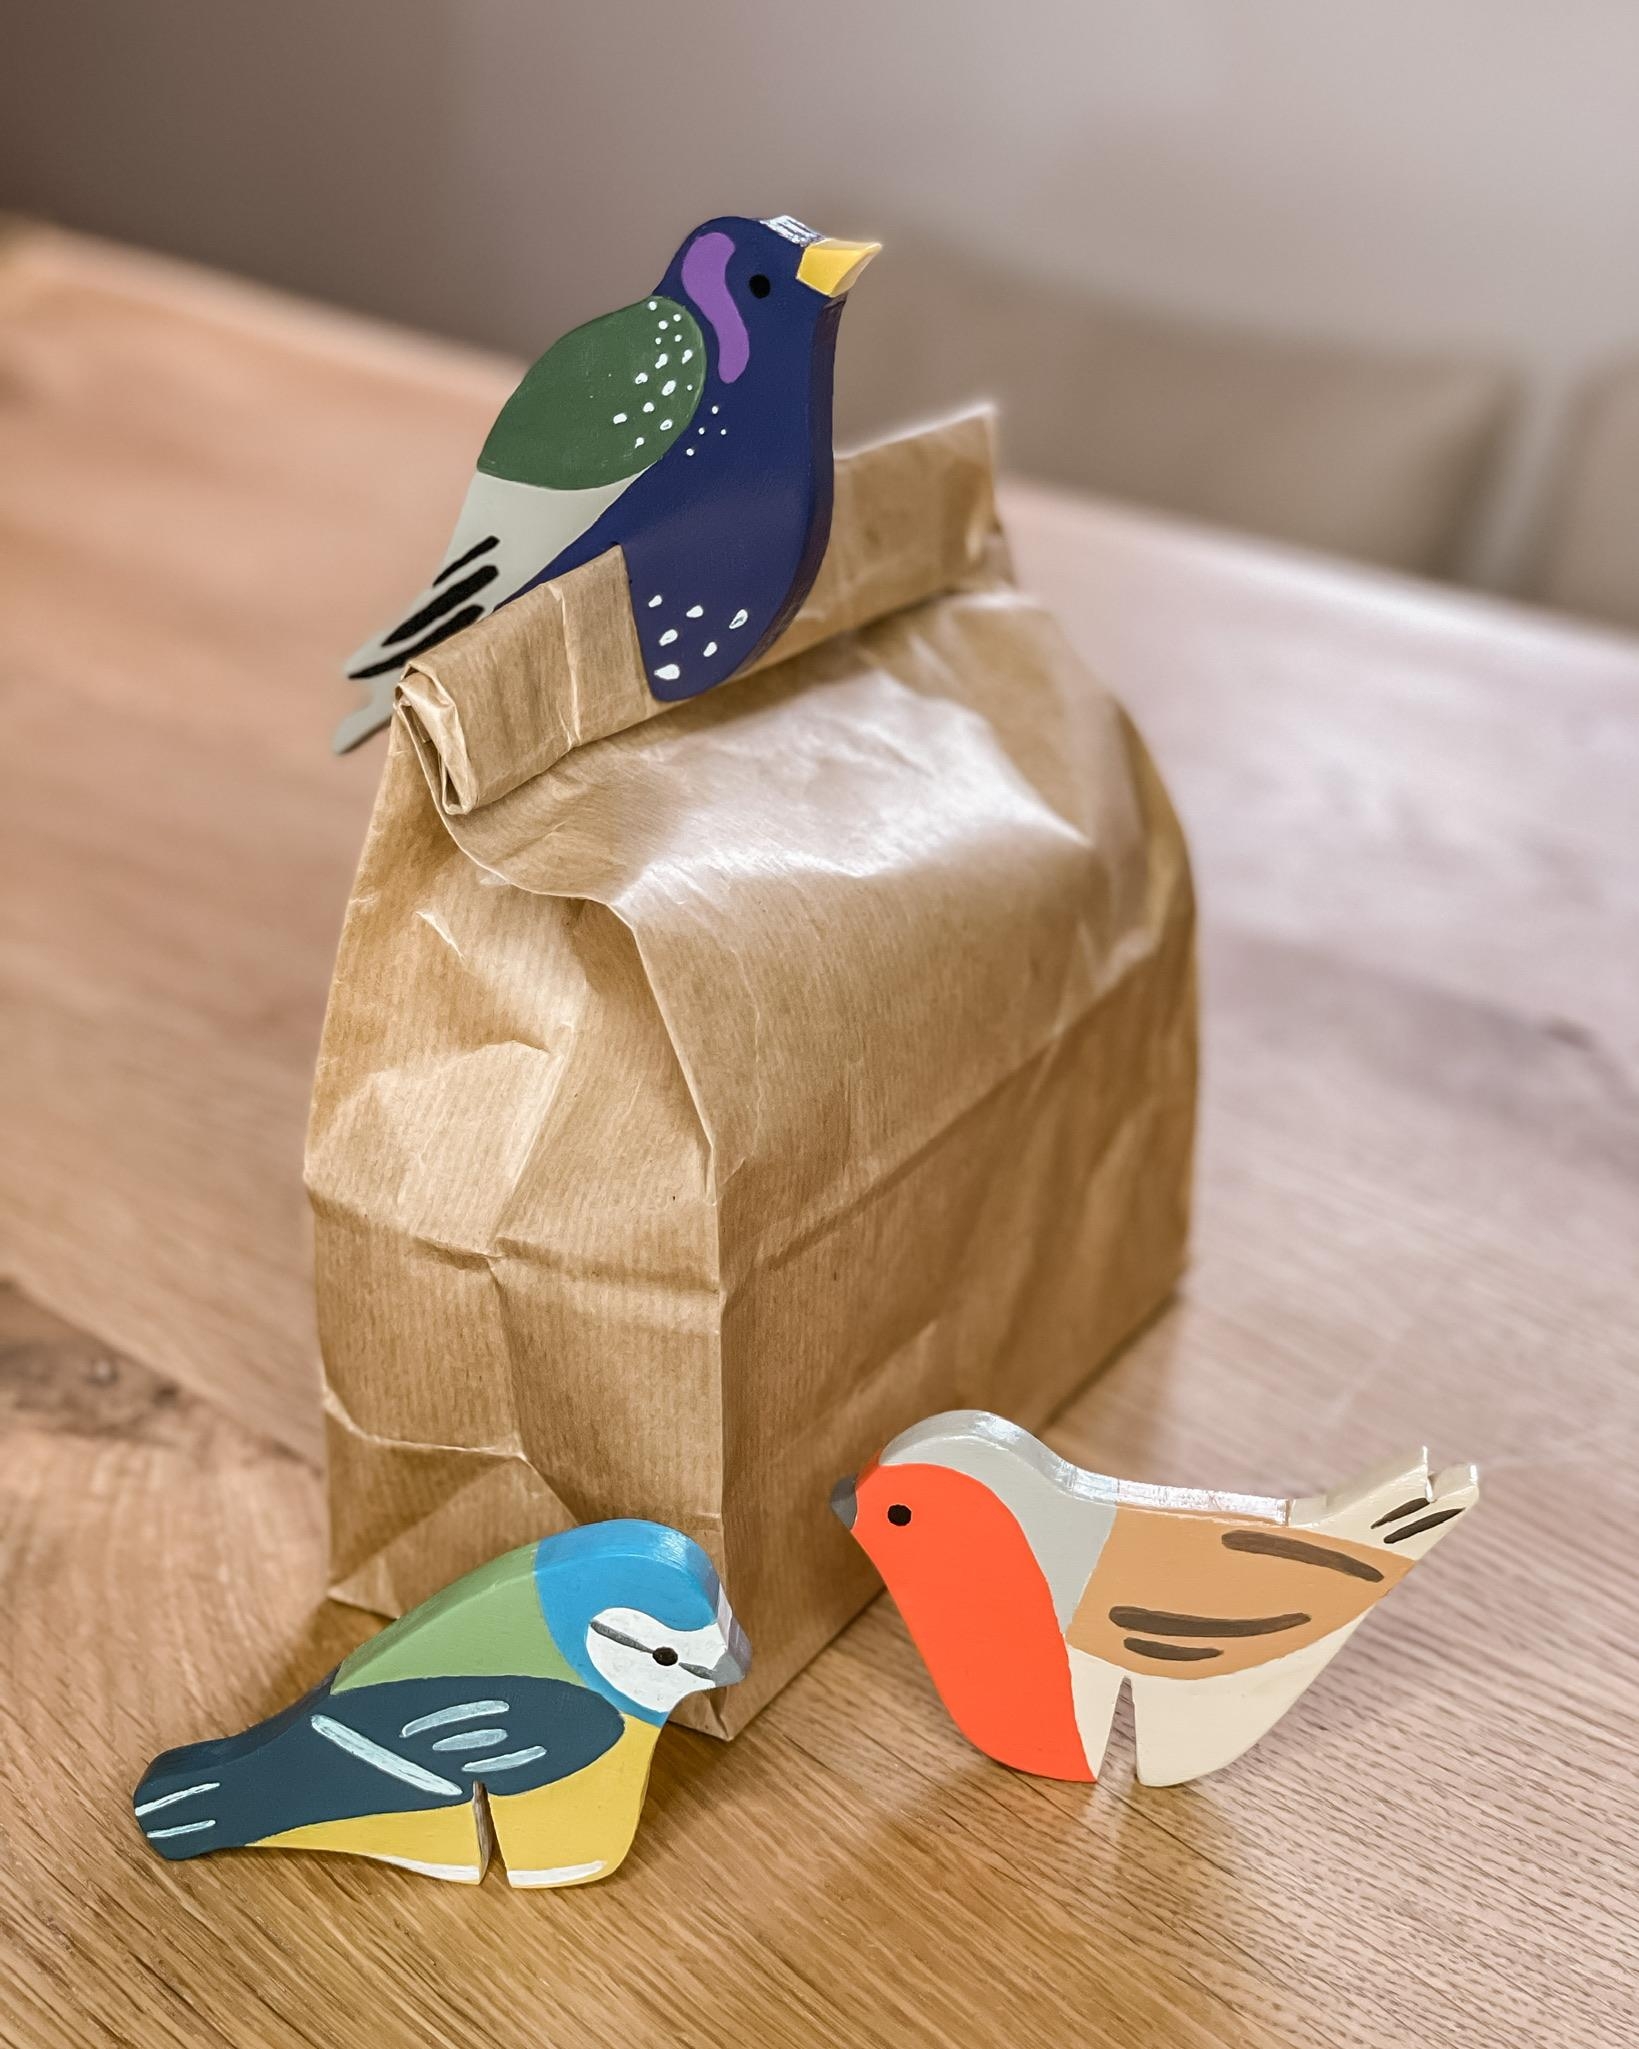 Montags - #diy 🐥🕊🐦
Drei kleine Vögel, die ich aus Holzresten zu Geschenk- oder Packungsverschlüssen gemacht habe. 